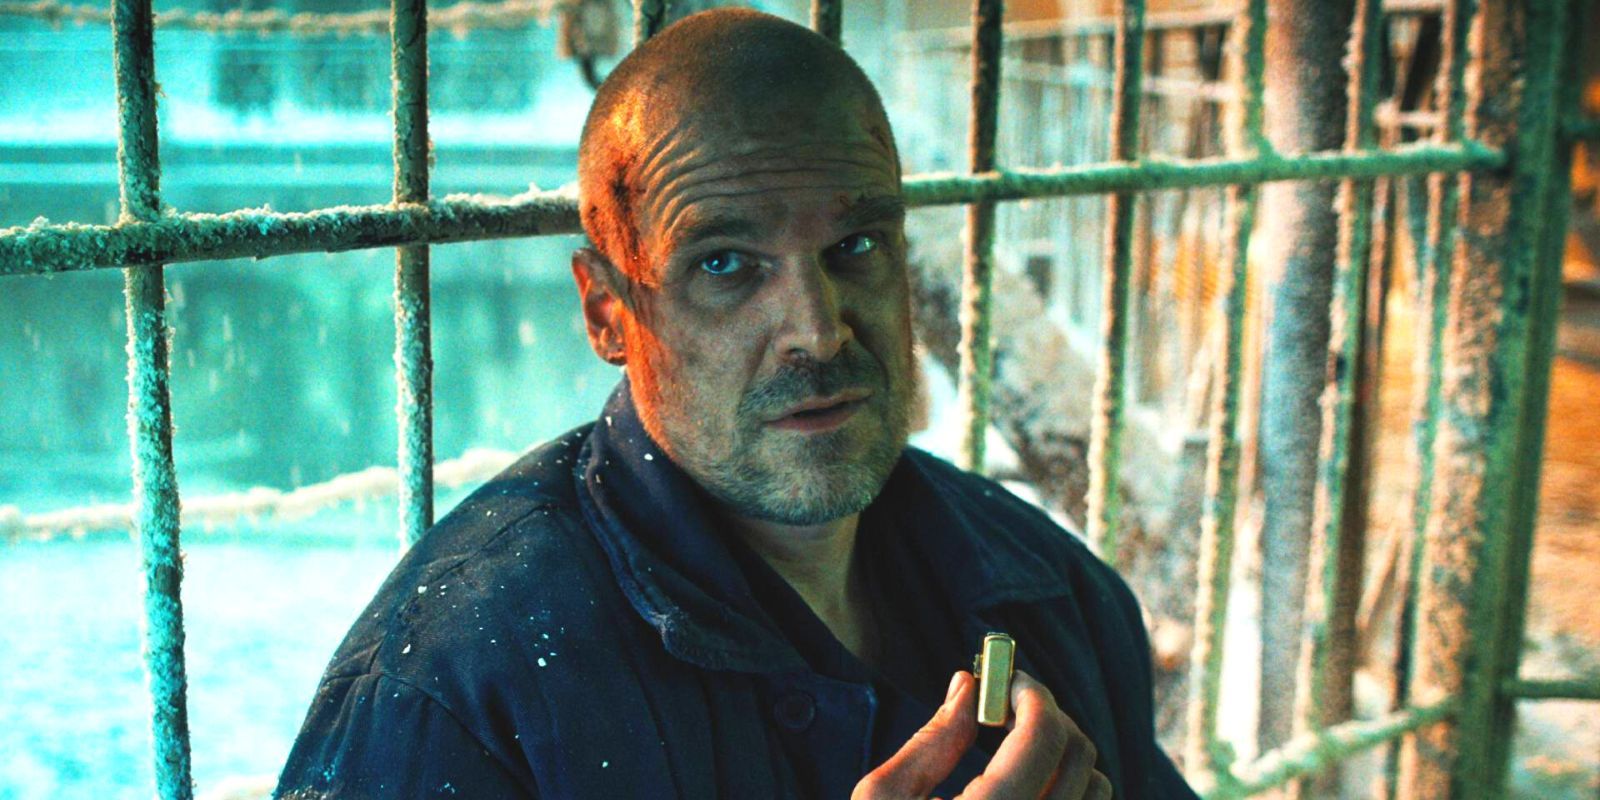 Stranger Things Season 4's Hopper in a snowy prison, holding a lighter